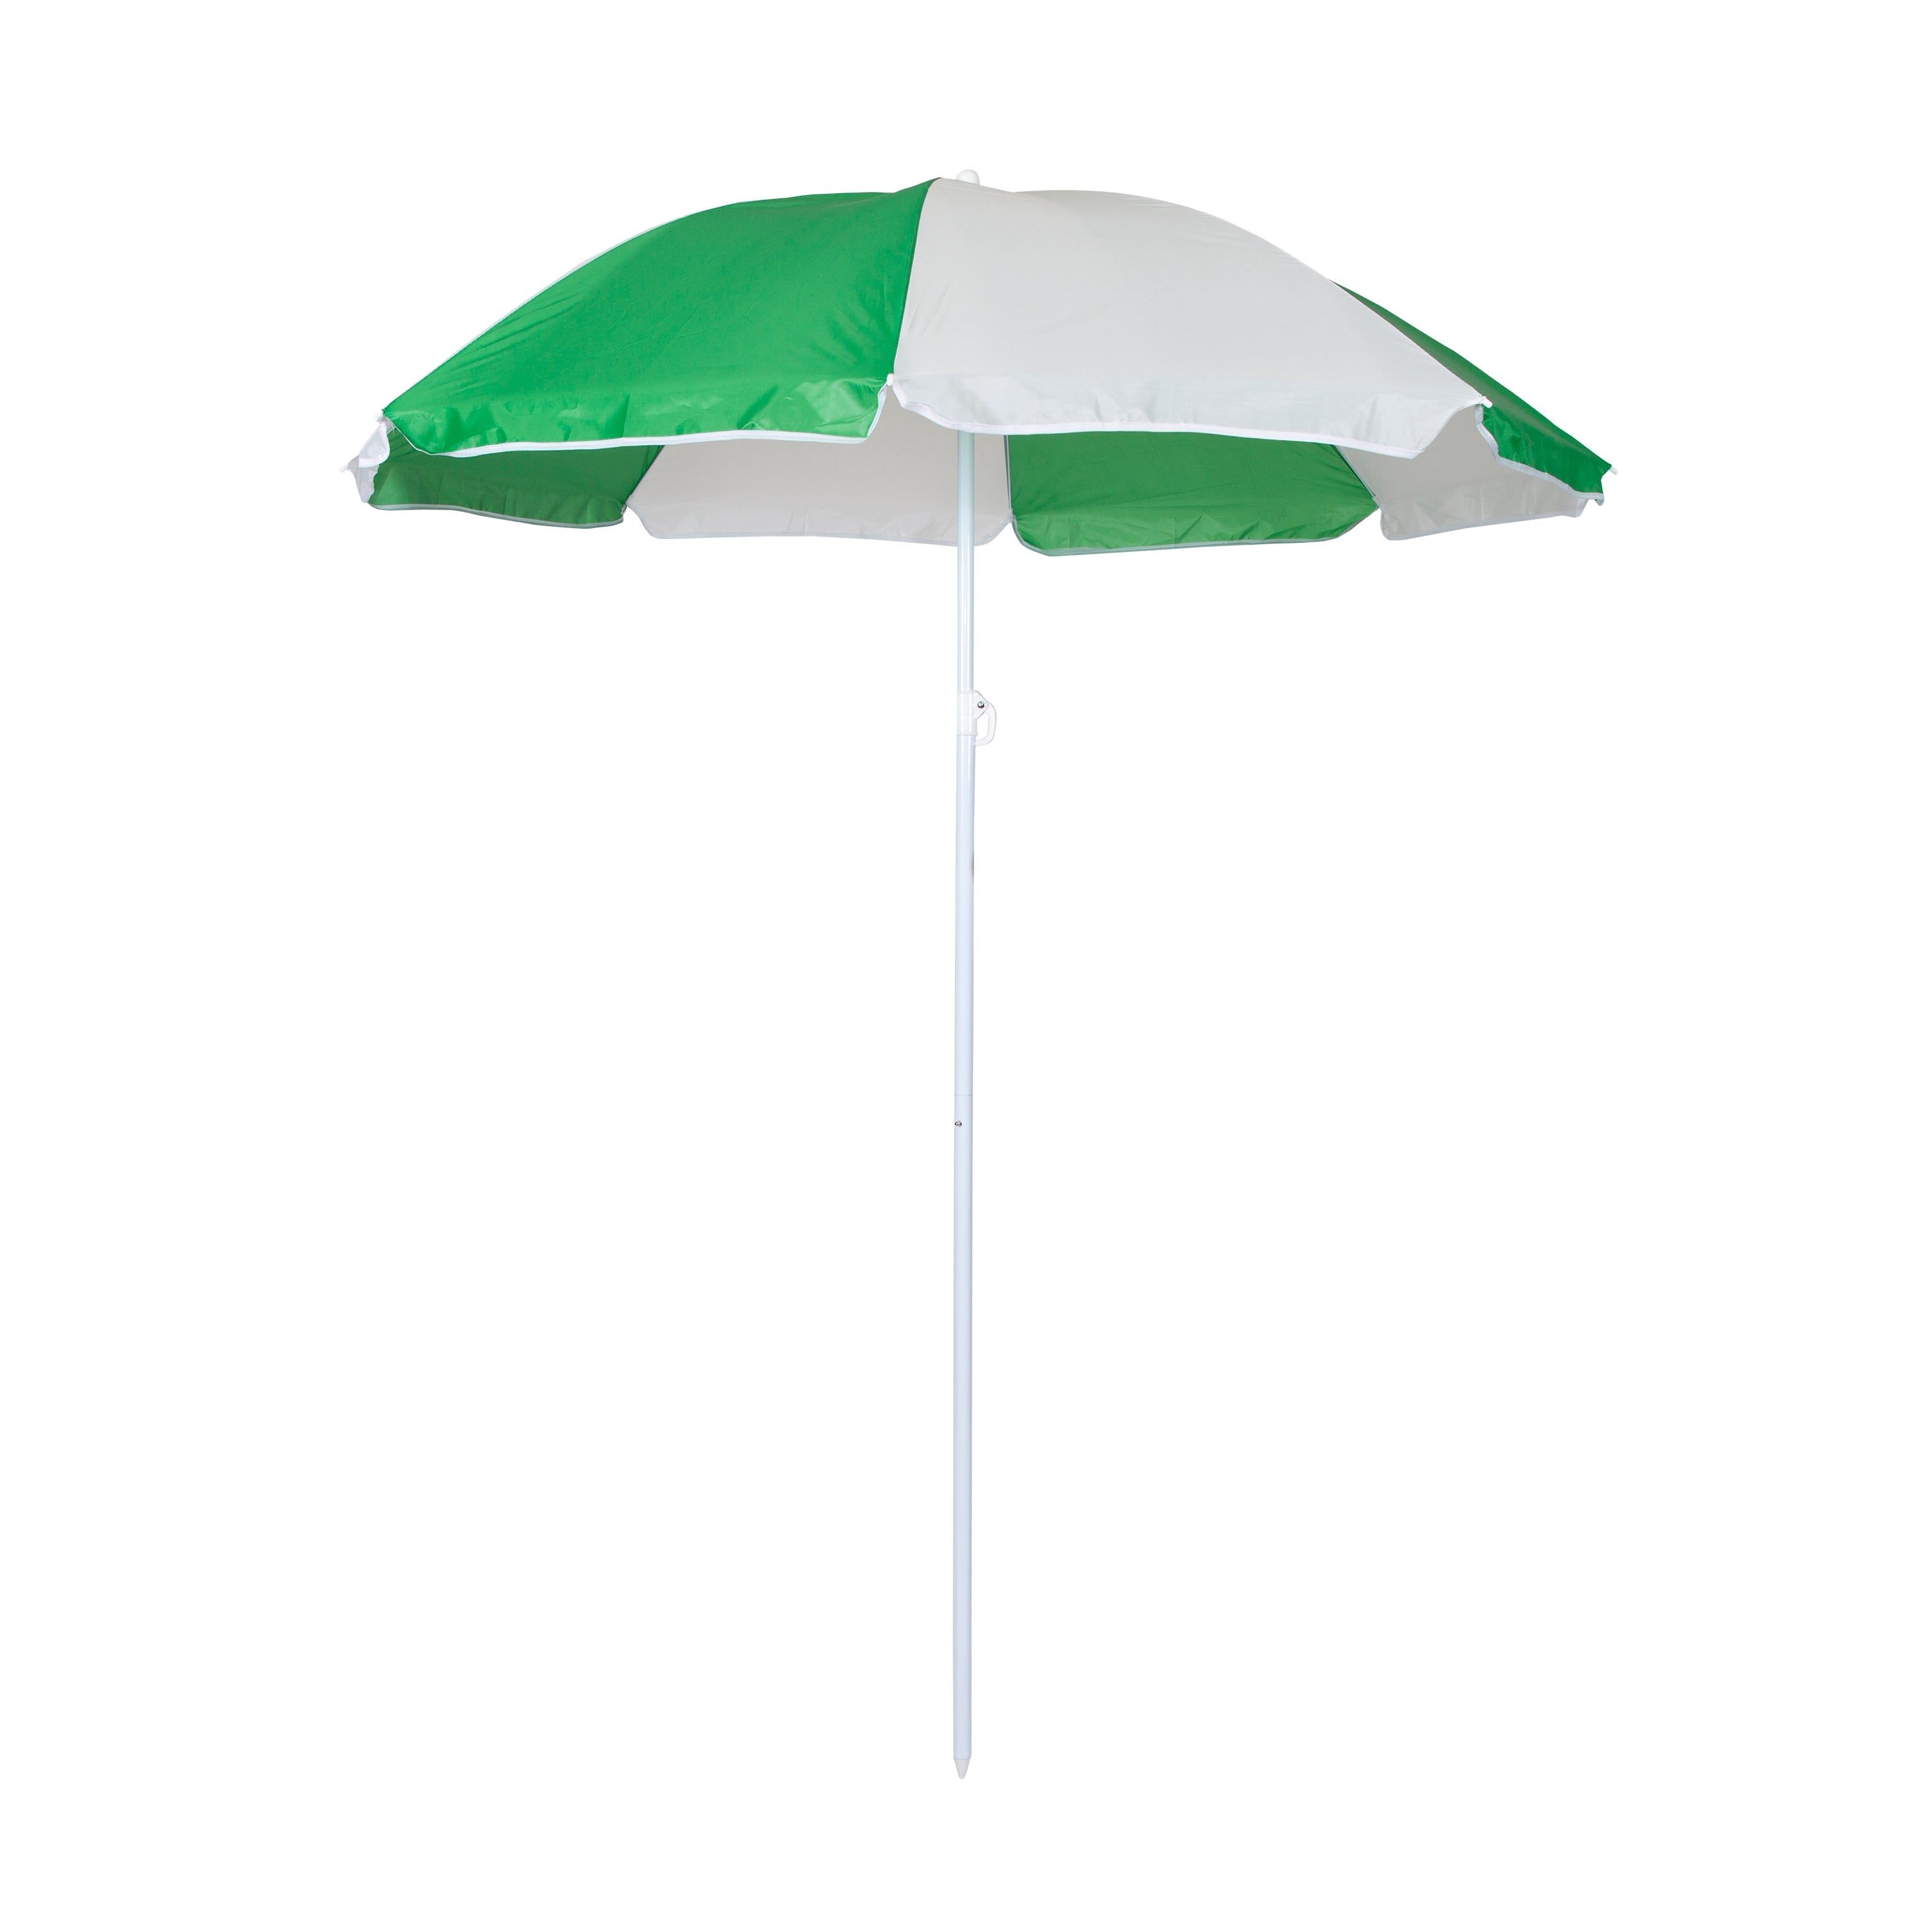 Picnic Umbrella